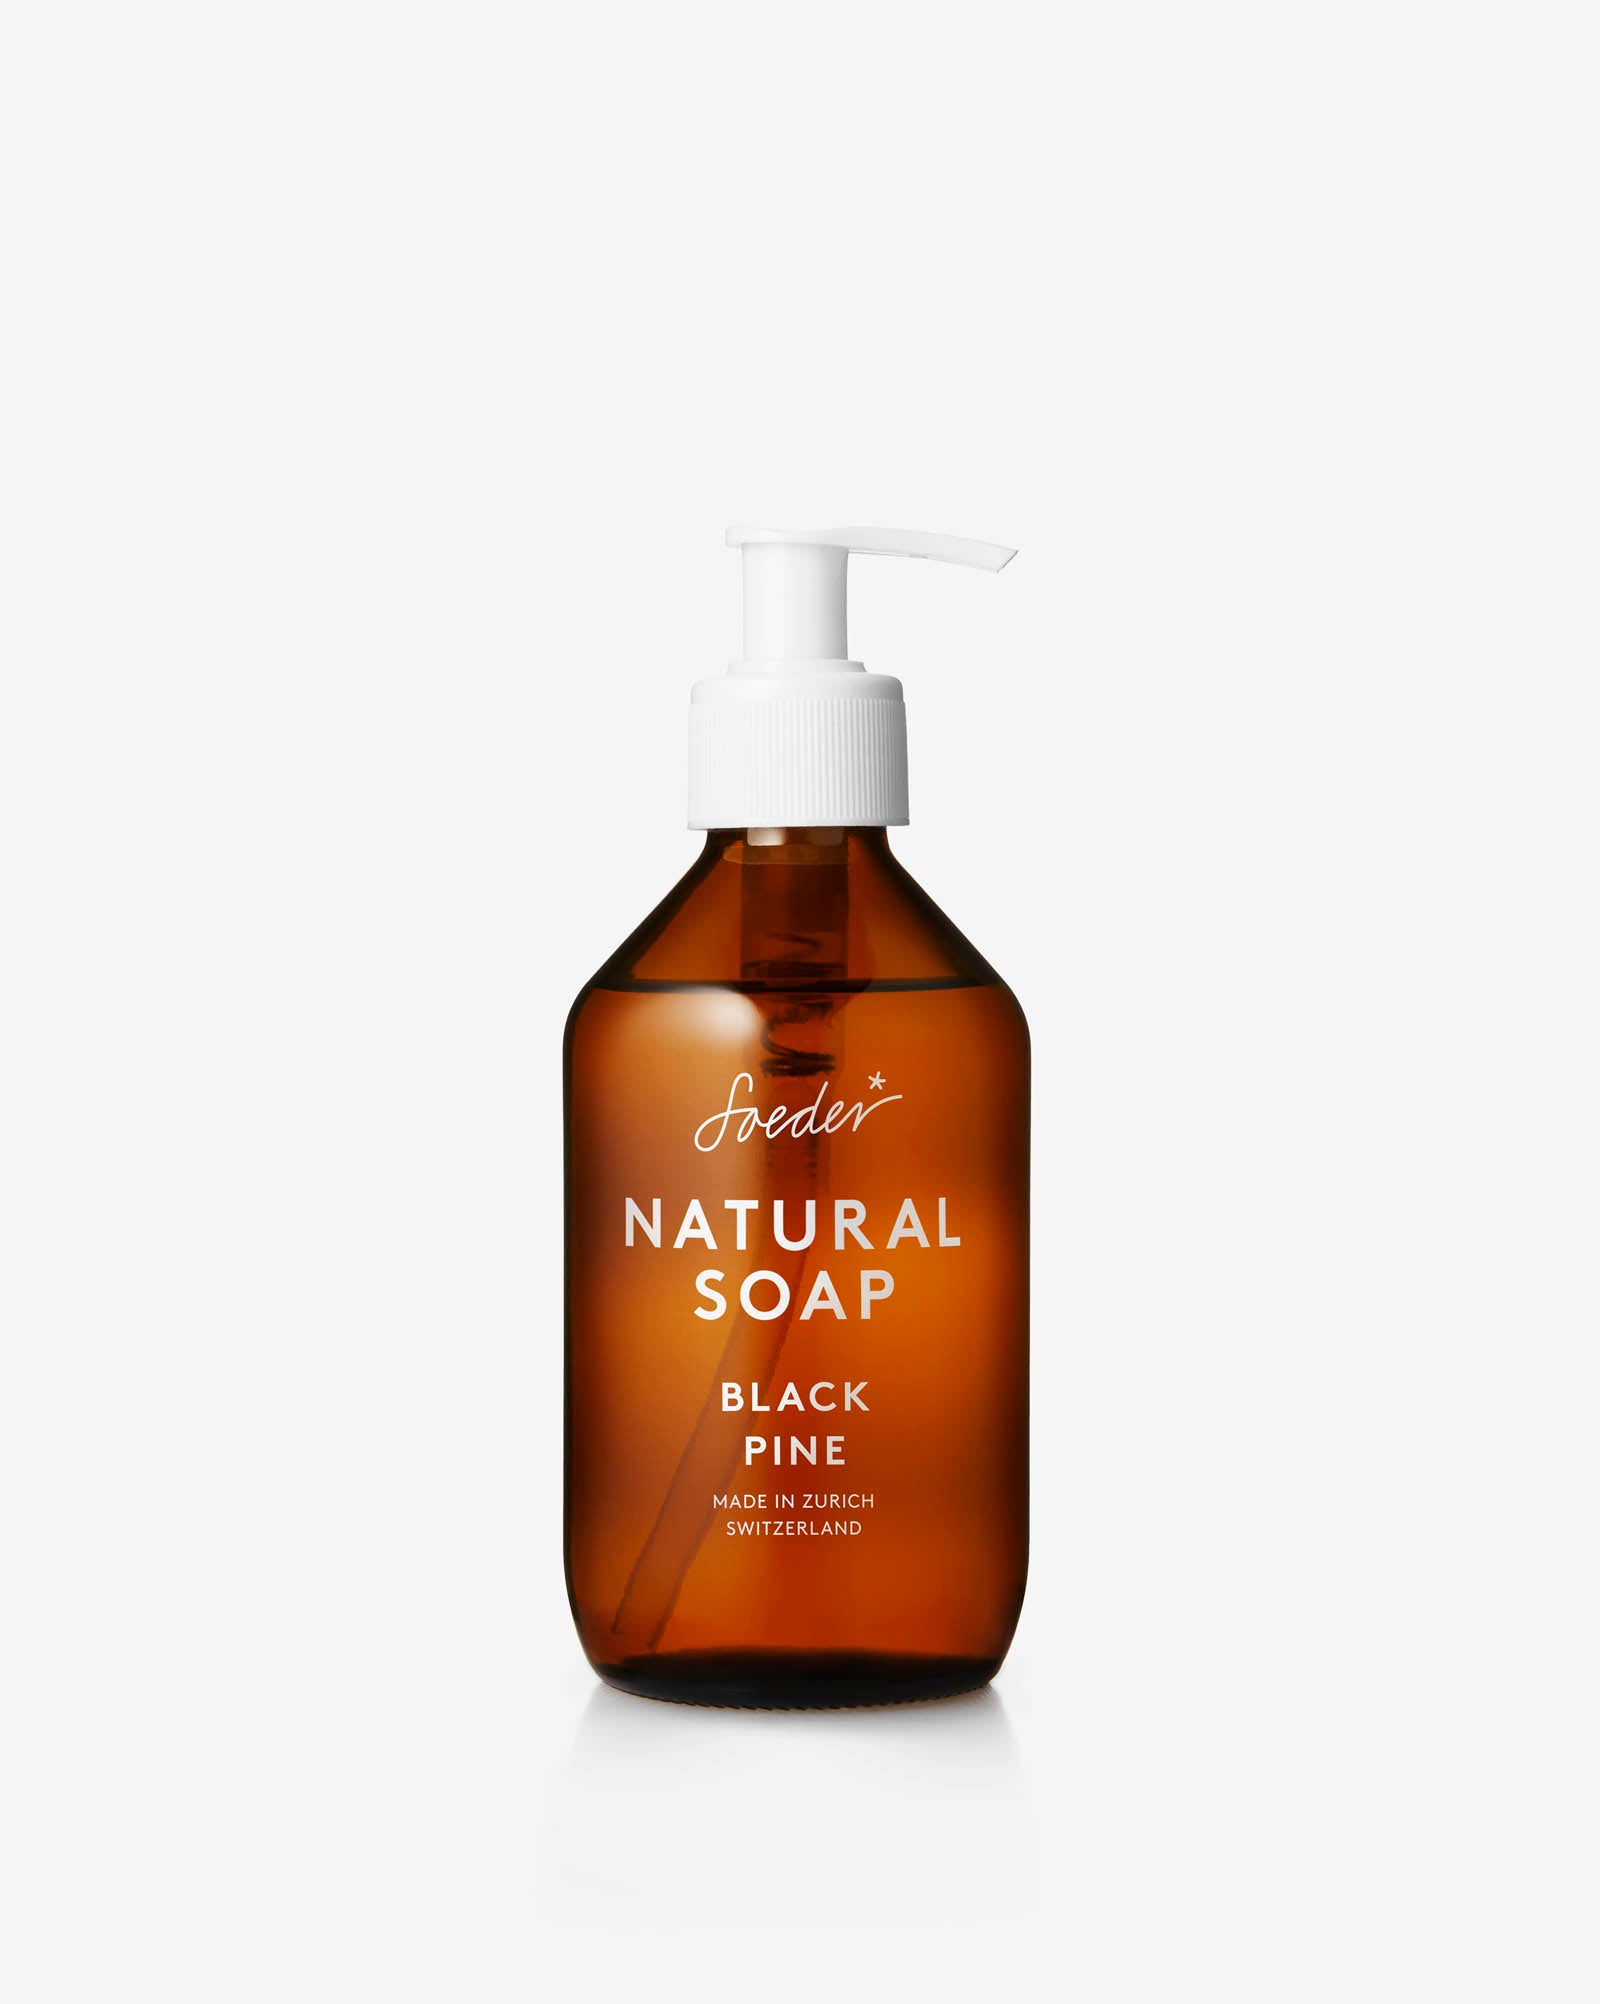 NATURAL SOAP BLACK PINE - Soeder